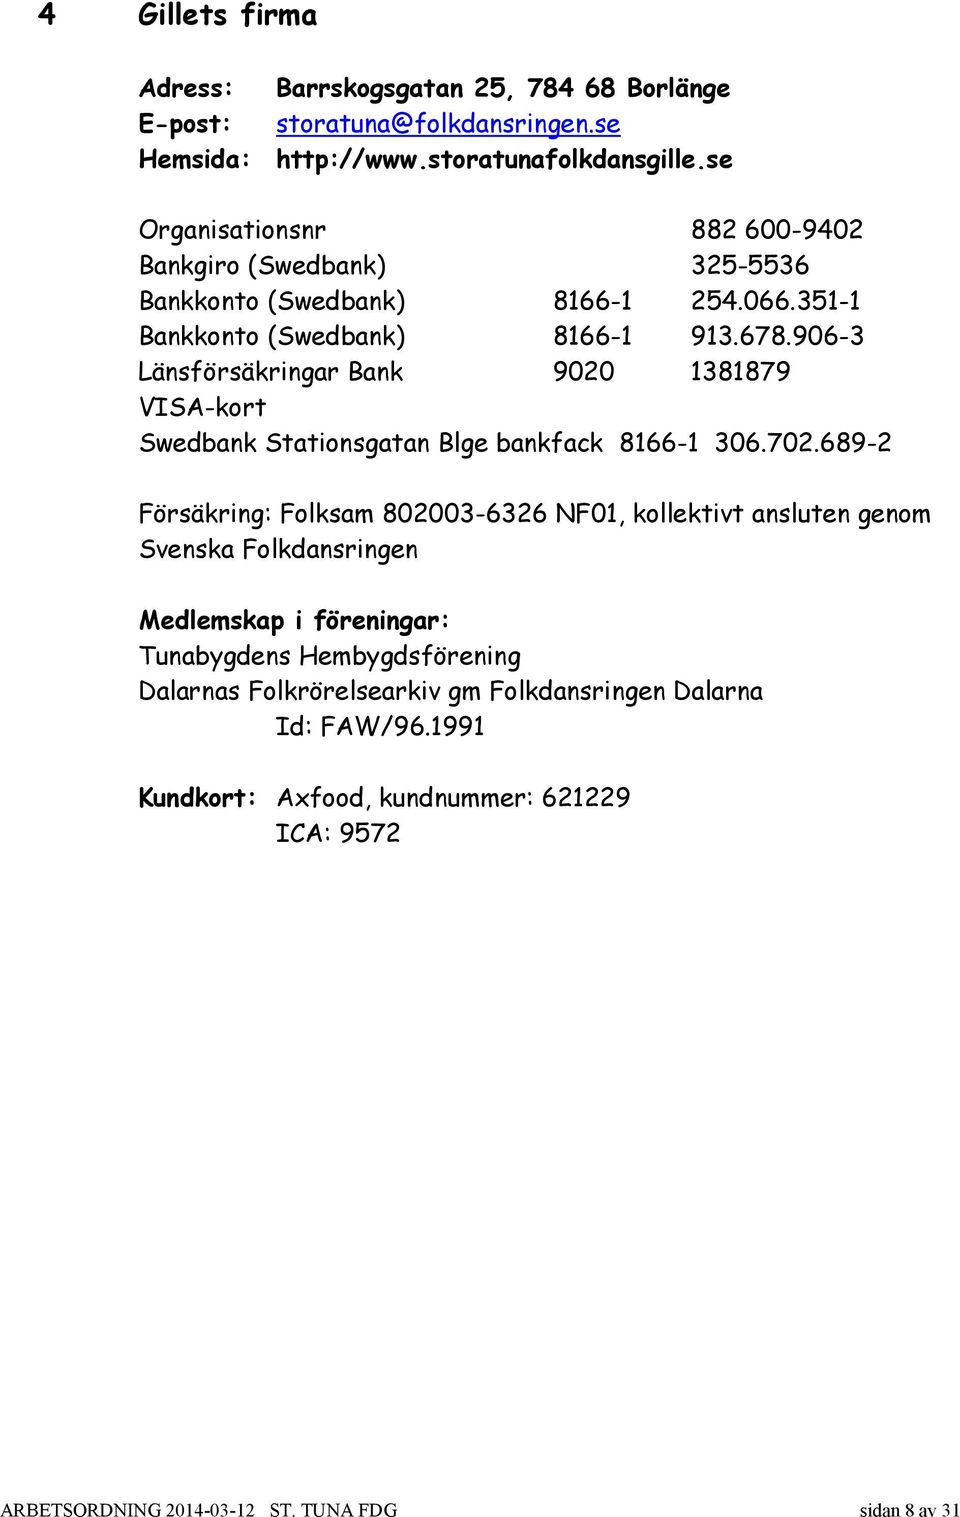 906-3 Länsförsäkringar Bank 9020 1381879 VISA-kort Swedbank Stationsgatan Blge bankfack 8166-1 306.702.